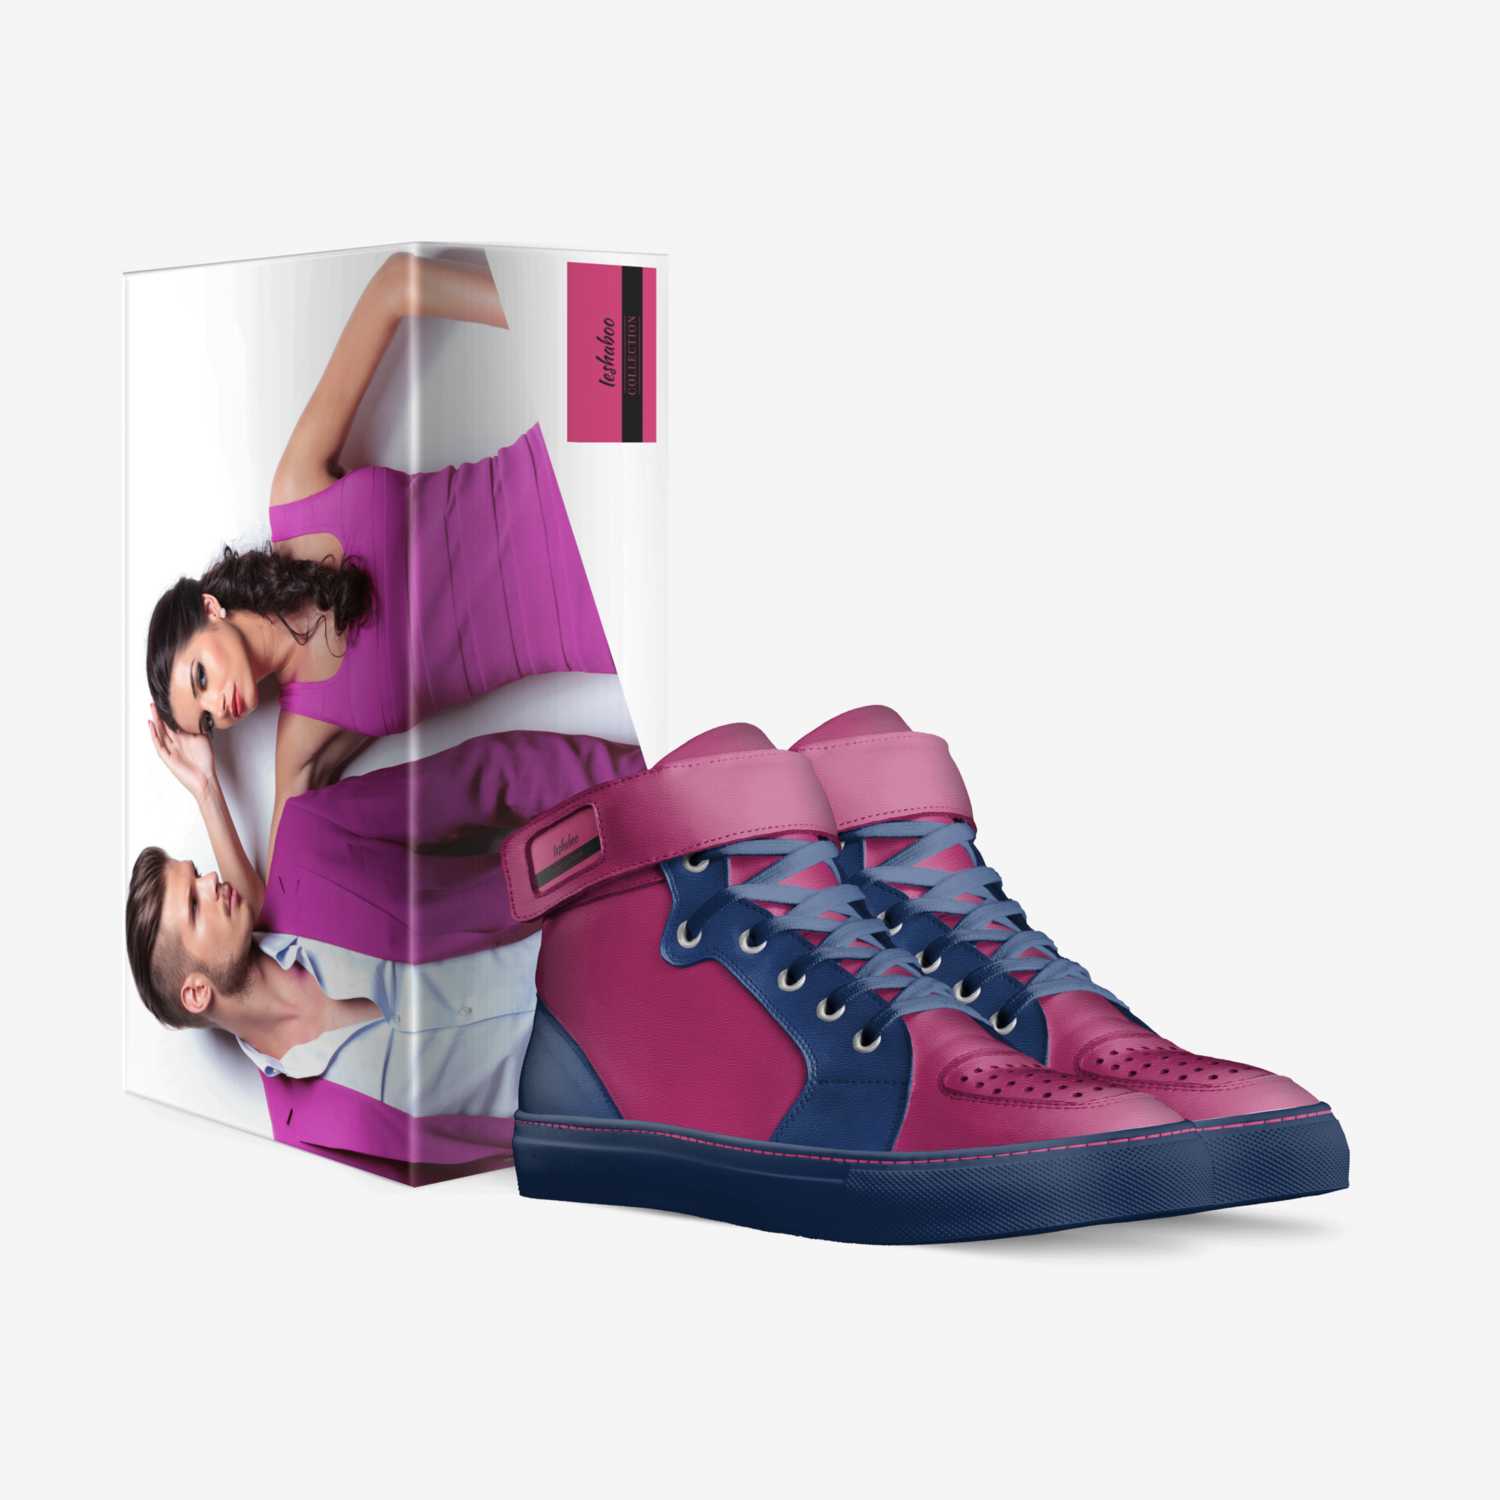 Ieshaboo custom made in Italy shoes by Iesha Nicole | Box view